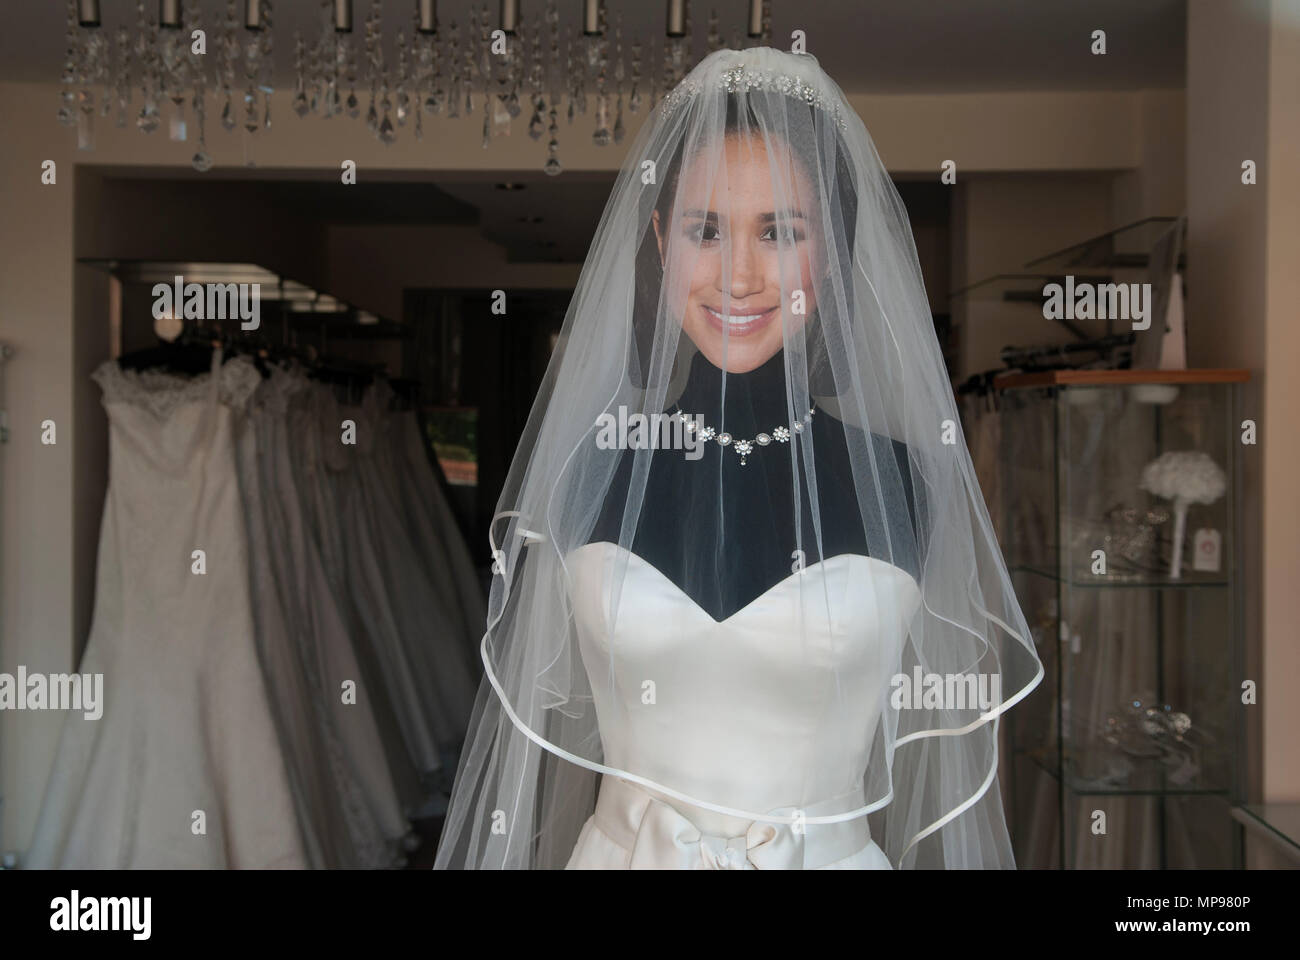 Boutique de robe de mariage l'aide de cut out carte face de Meghan Markle la Duchesse de Sussex Mai 2018 Windsor Angleterre HOMER SYKES Banque D'Images